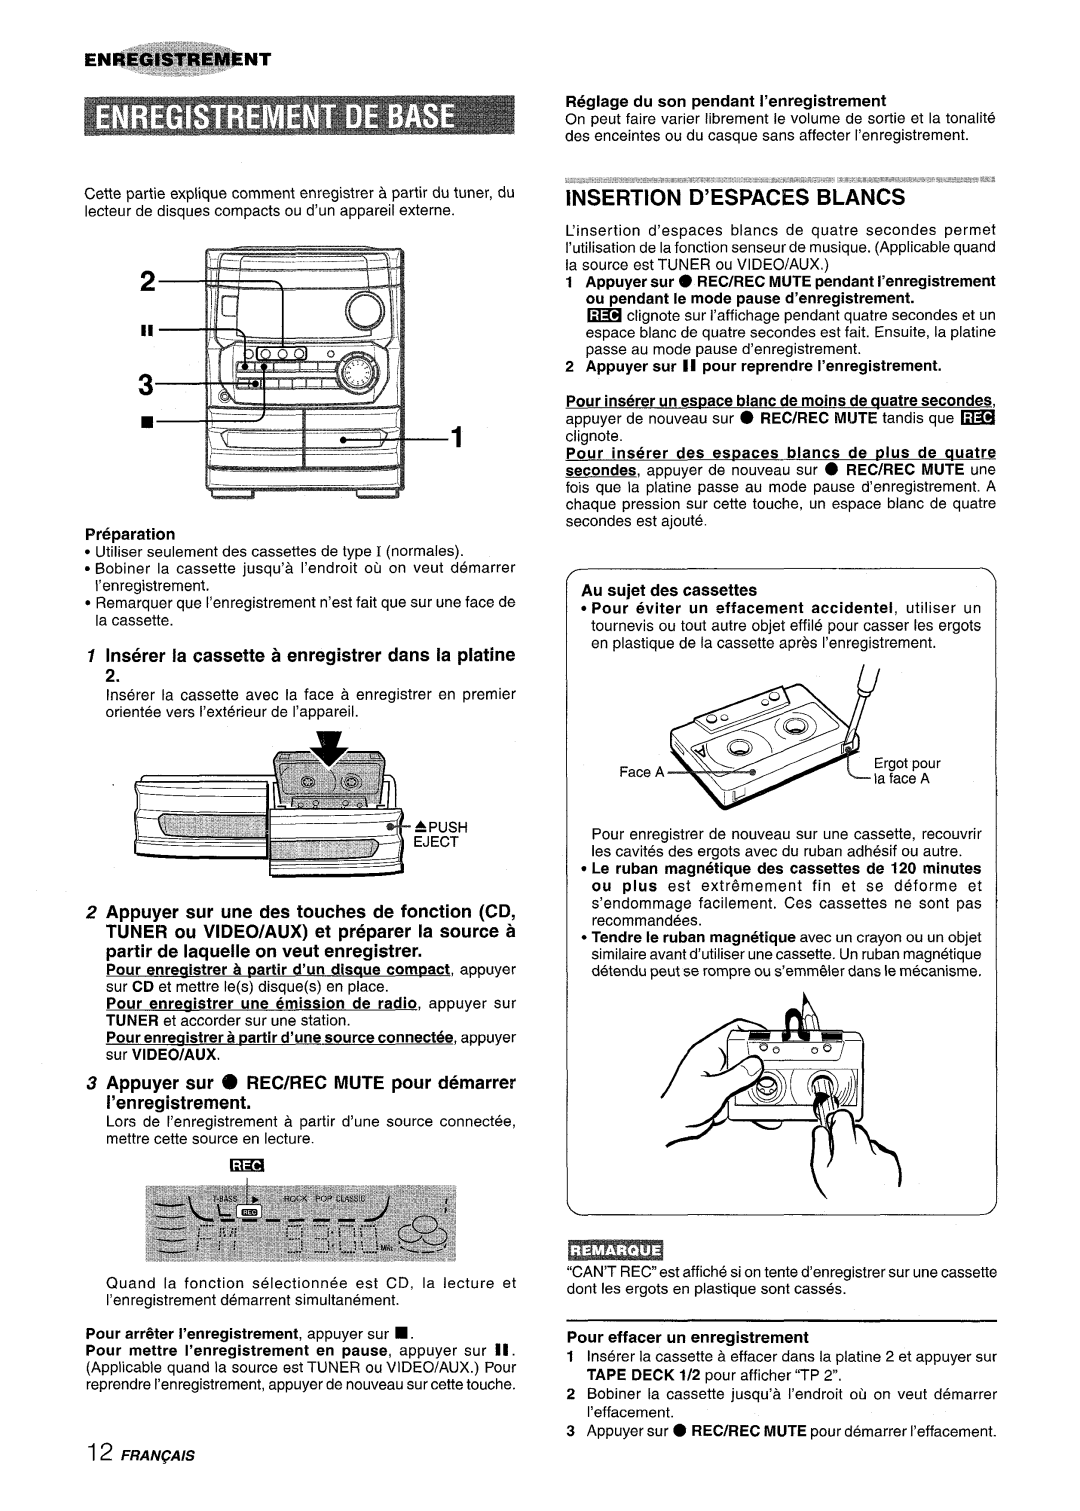 Aiwa CX-NA222 manual Inserer la cassette a enregistrer clans la platine, Au sujet des cassettes 